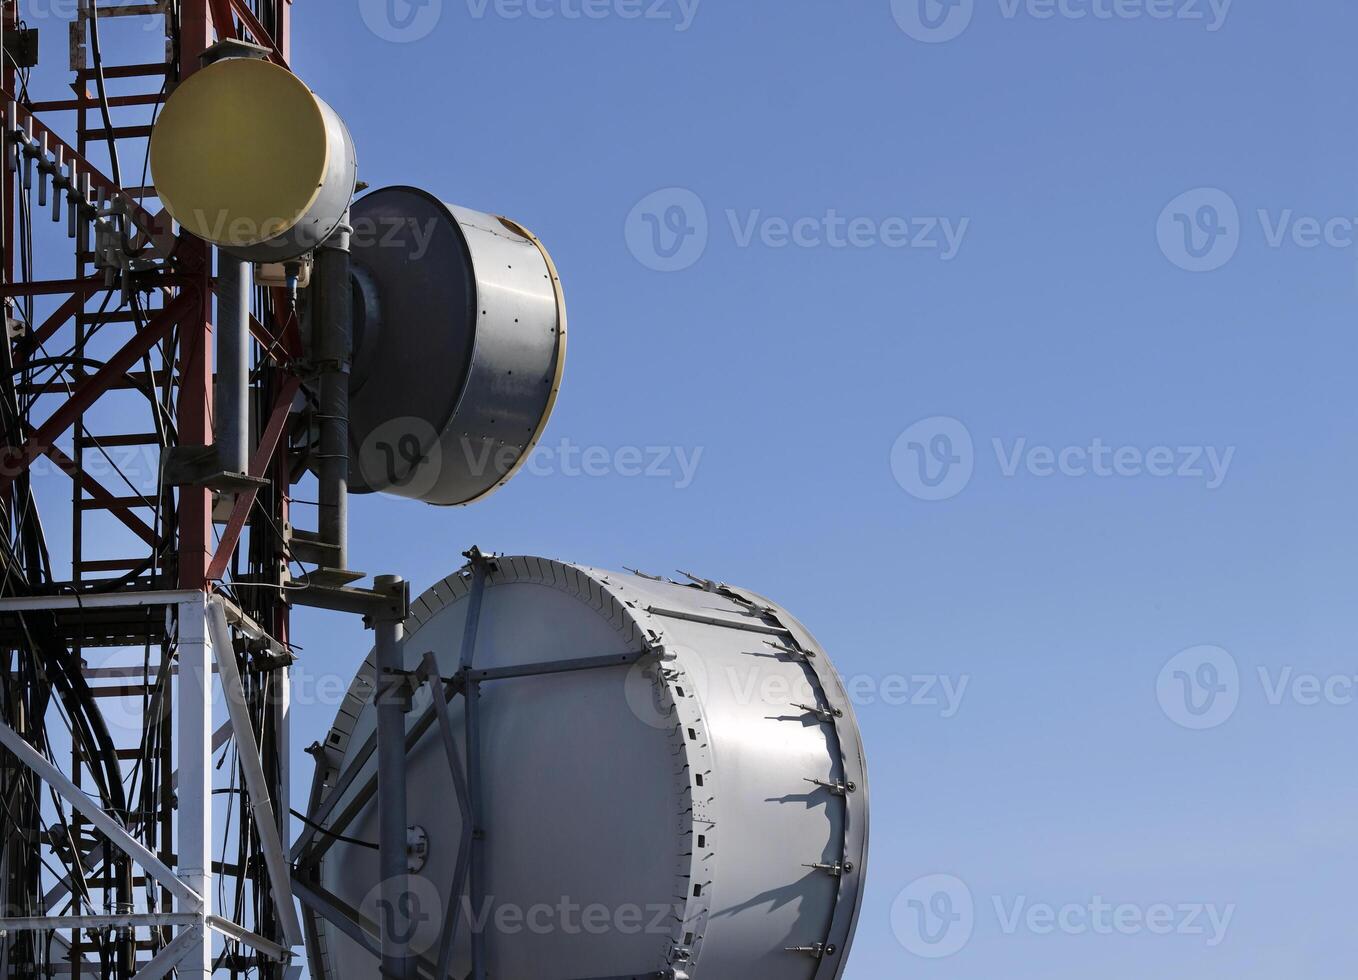 Telekommunikation Antenne mit mehrere Satellit Geschirr gegen das Blau Himmel foto